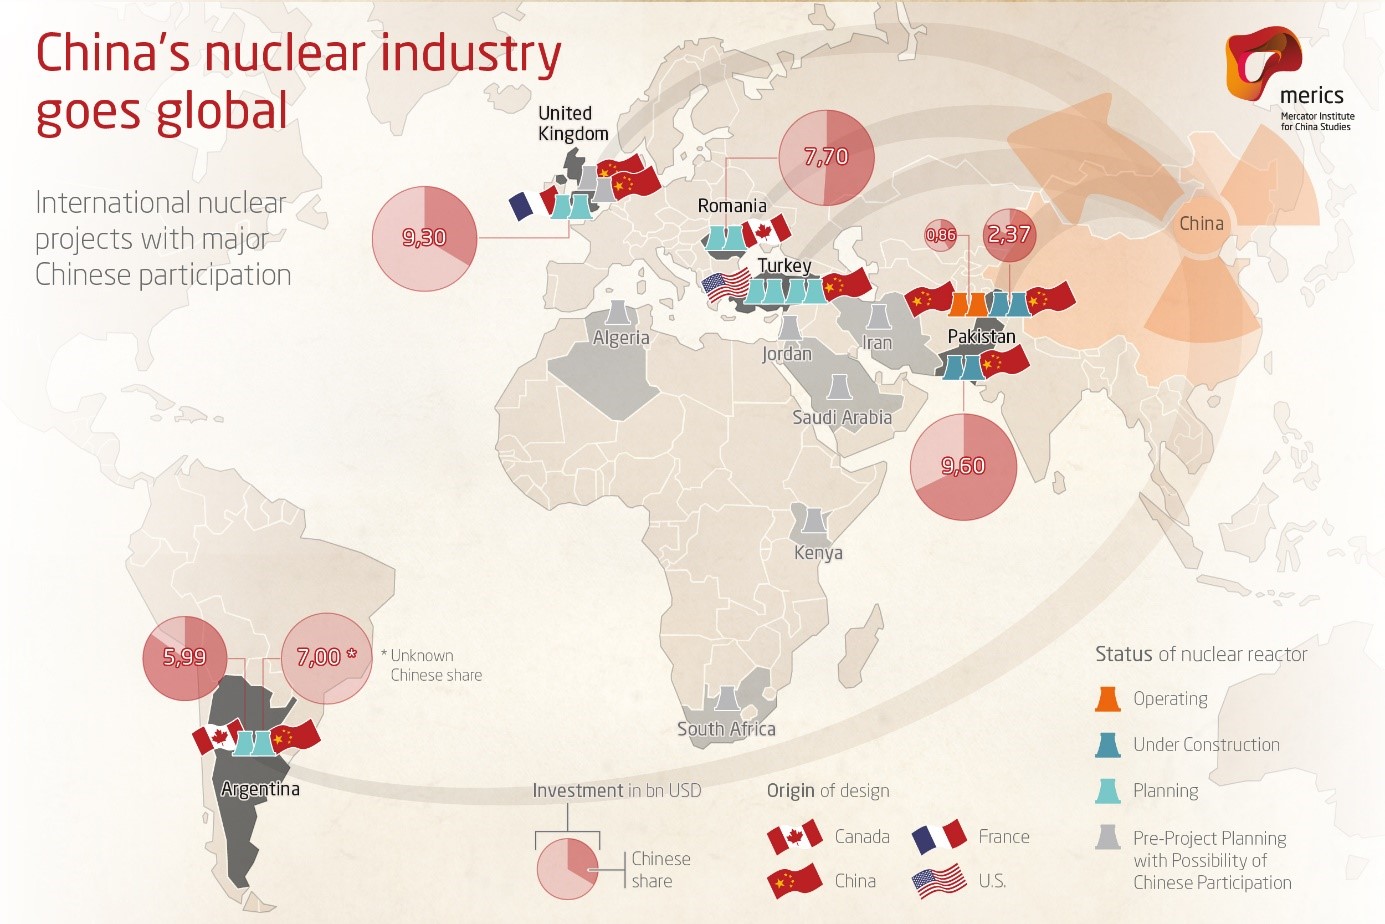 L’energia nucleare in Cina